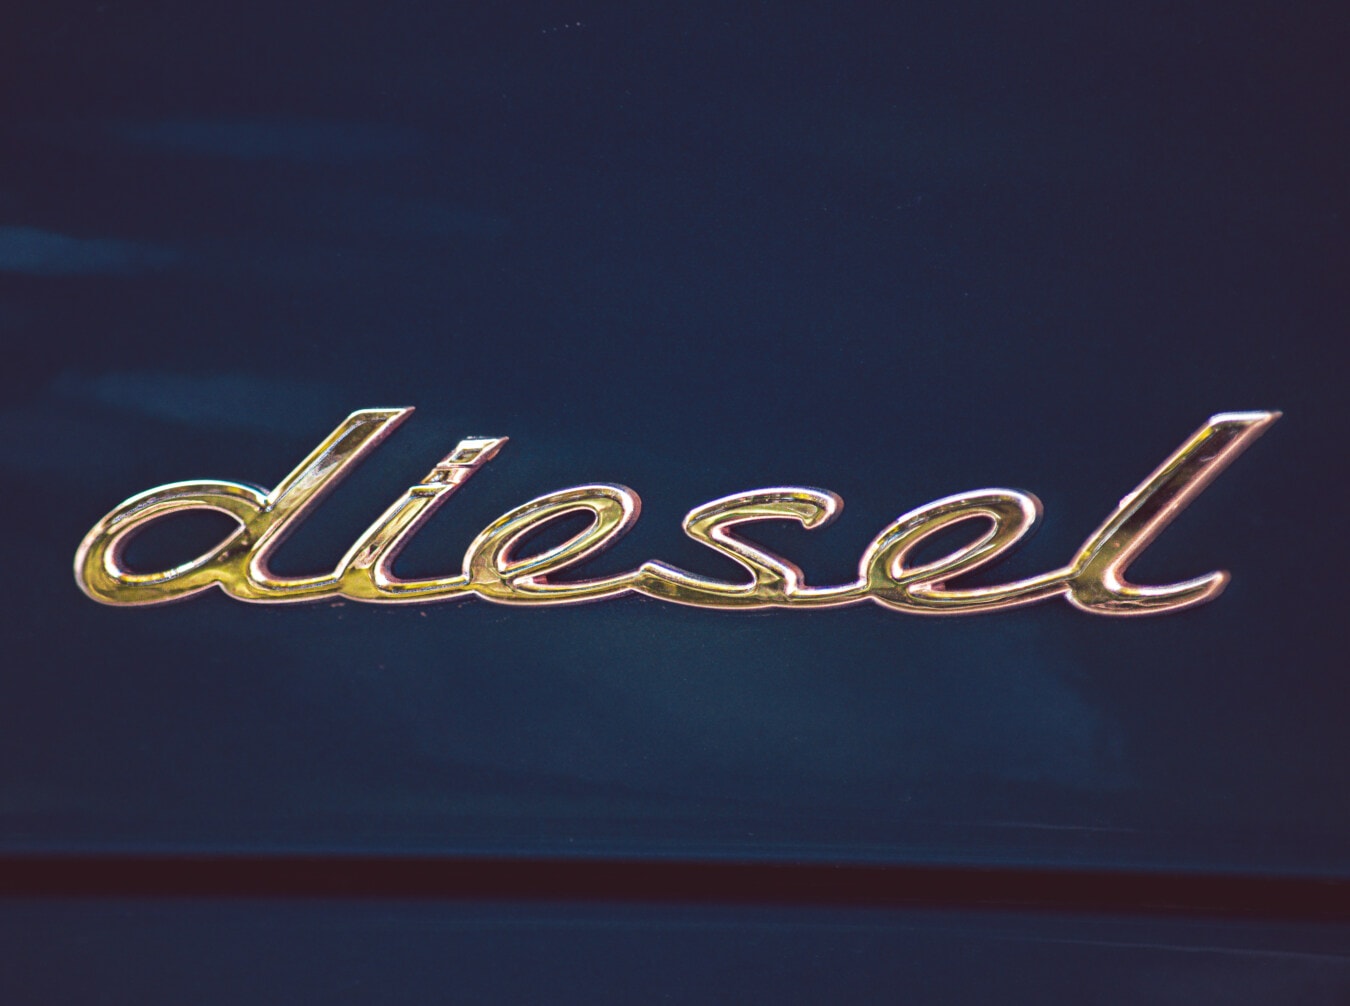 diesel, signo de, cromo, metálicos, acero inoxidable, brillante, texto, símbolo, brillante, reflexión